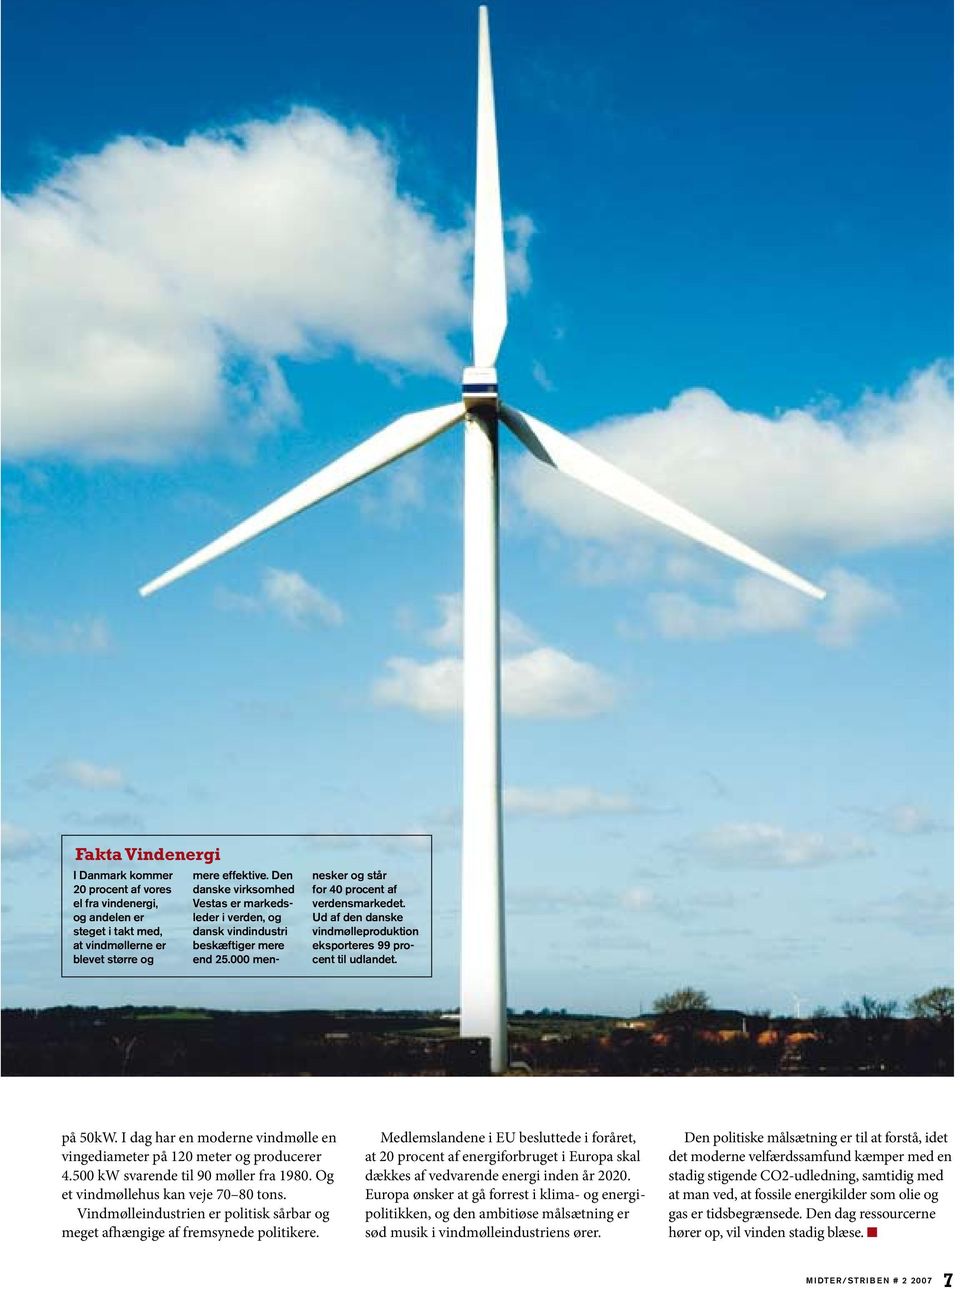 Ud af den danske vindmølleproduktion eksporteres 99 procent til udlandet. på 50kW. I dag har en moderne vindmølle en vingediameter på 120 meter og producerer 4.500 kw svarende til 90 møller fra 1980.